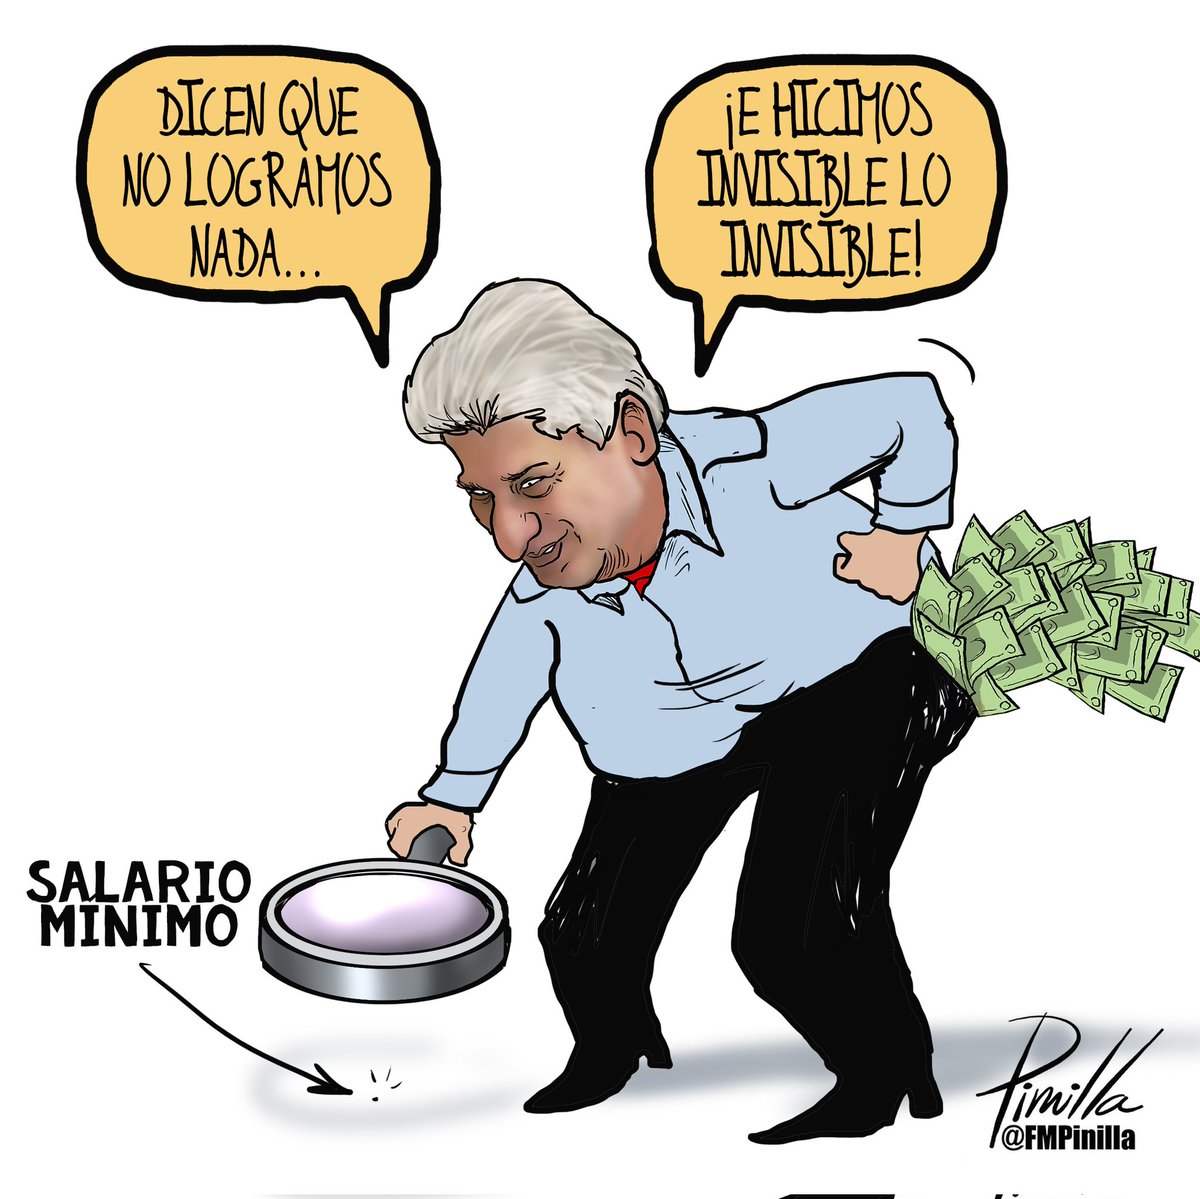 ¡Salario mínimo en #cuba!
•
#dibujolibre para @dlasamericas_
•
#caricatura #cartoon #usa #eeuuu #eeuu🇺🇸 #politicalcartoon